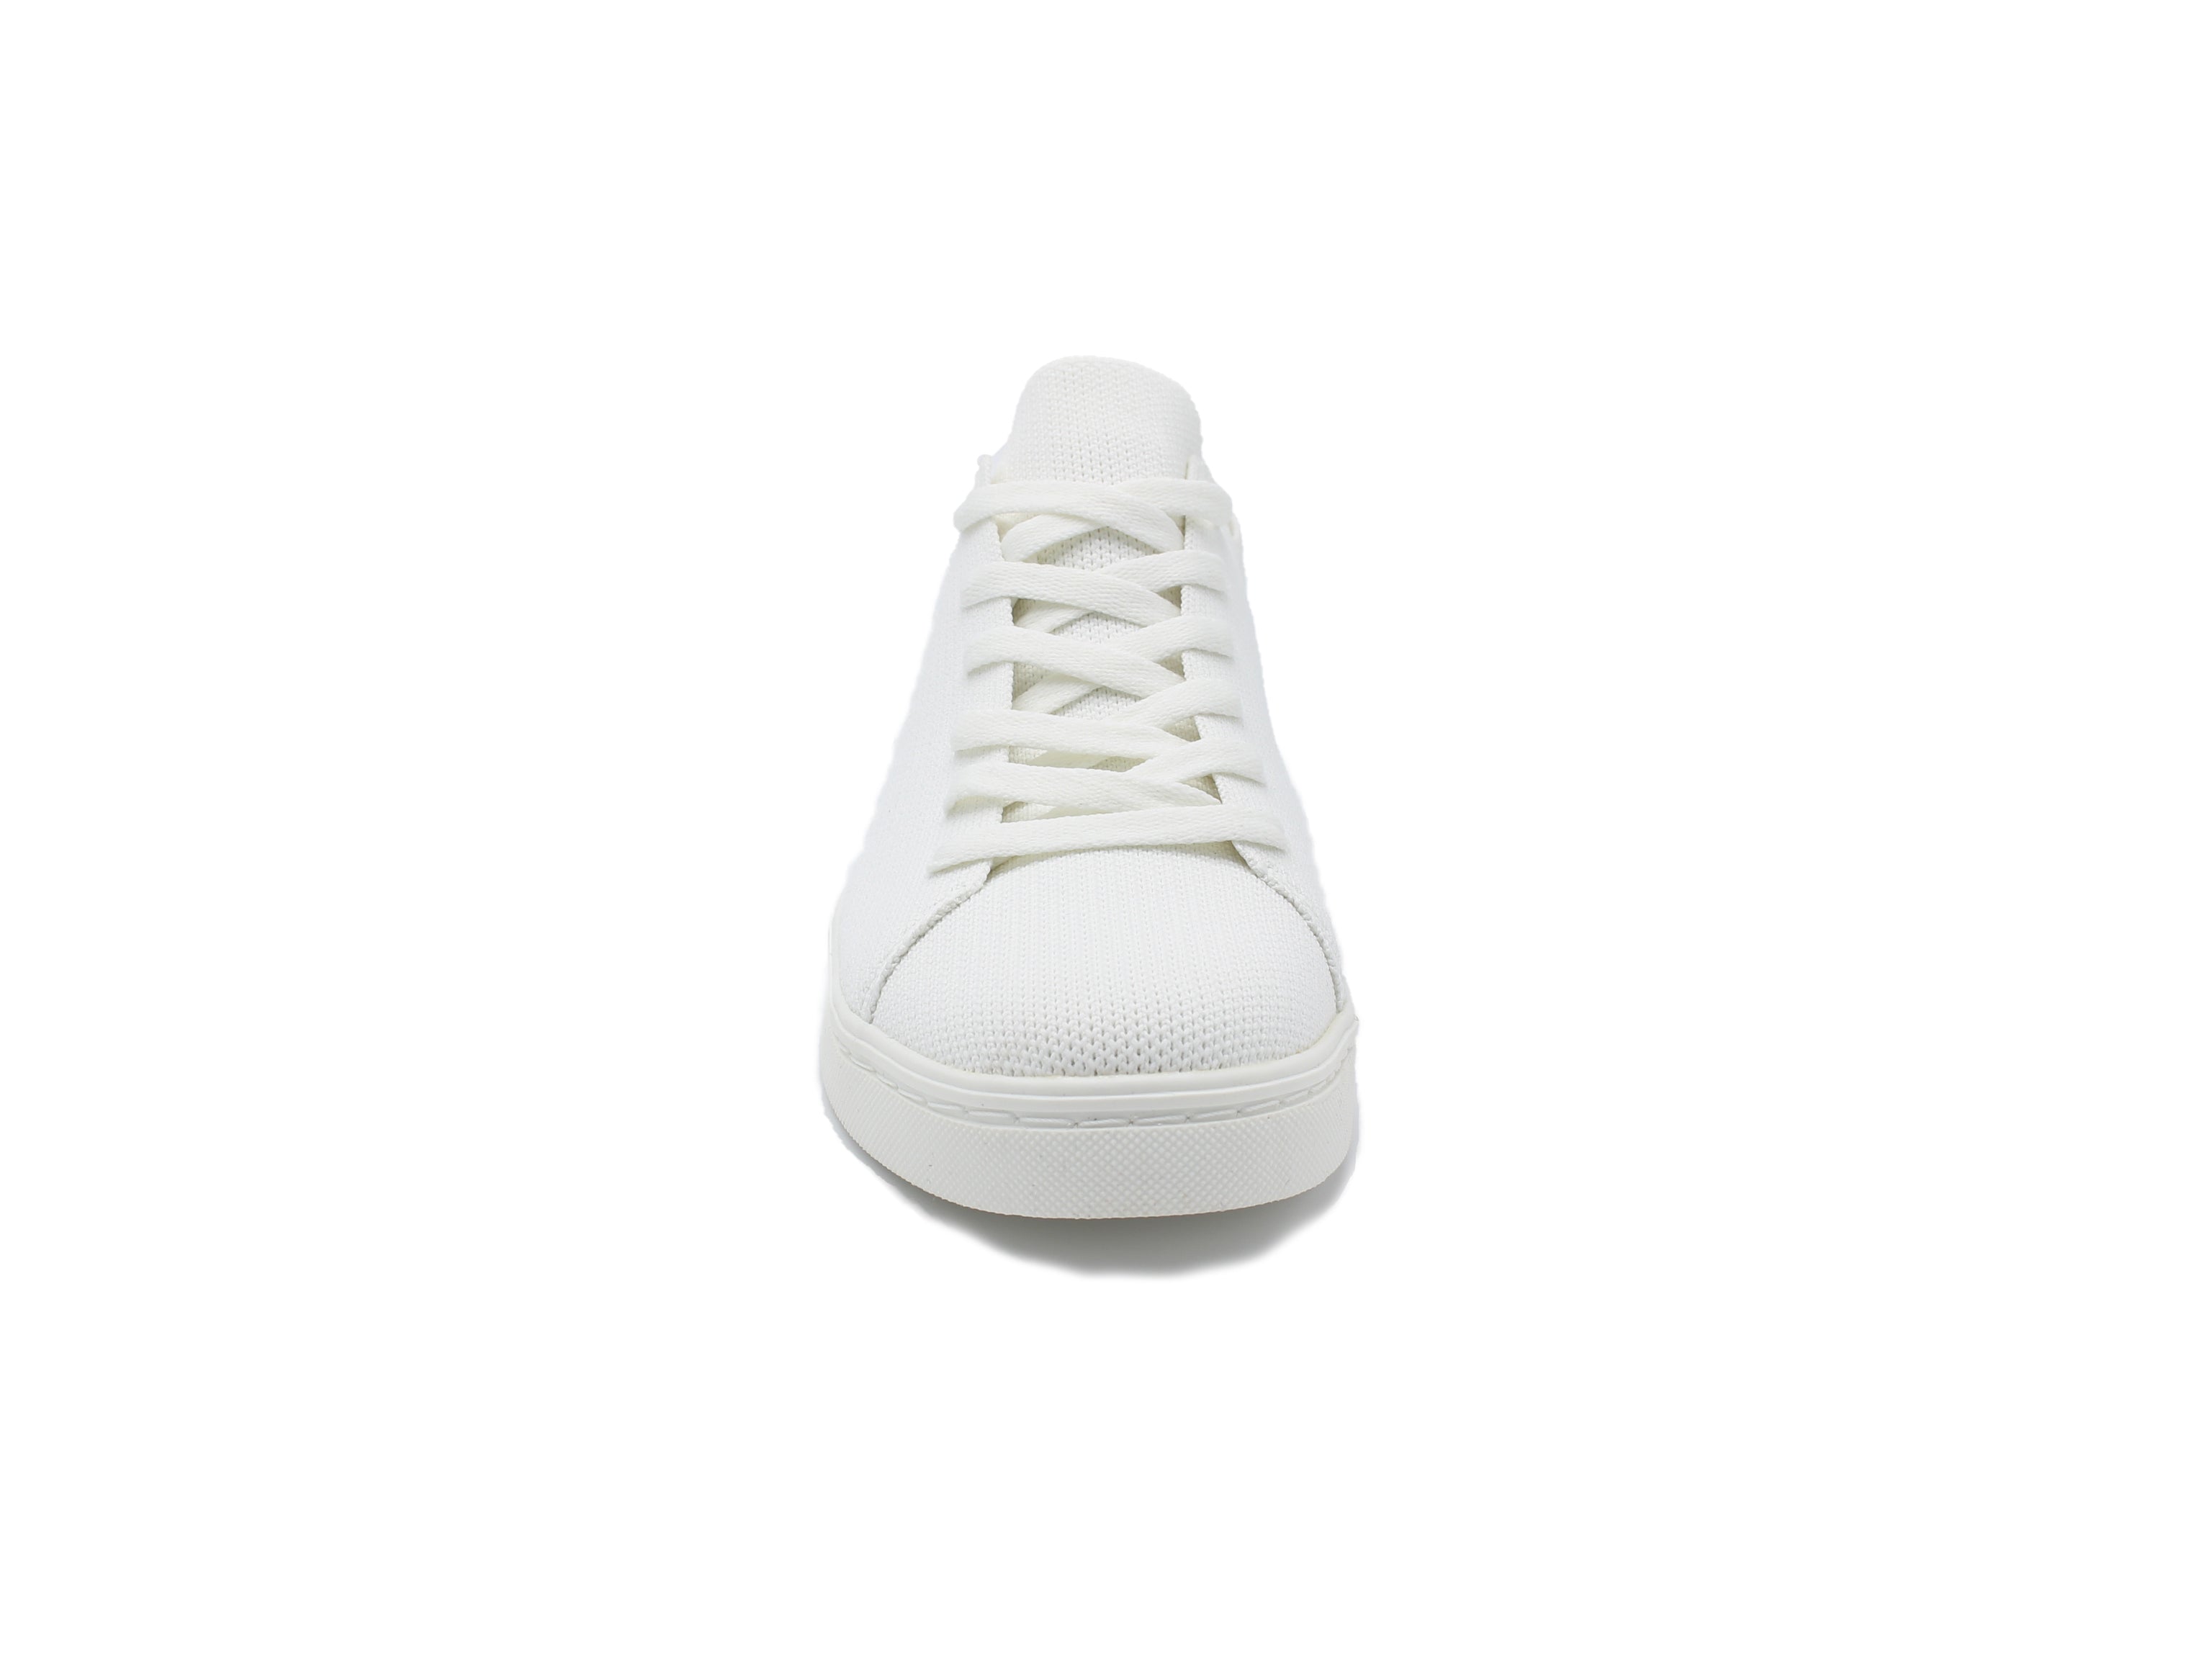 Shsnsandf0yr6m white shoes